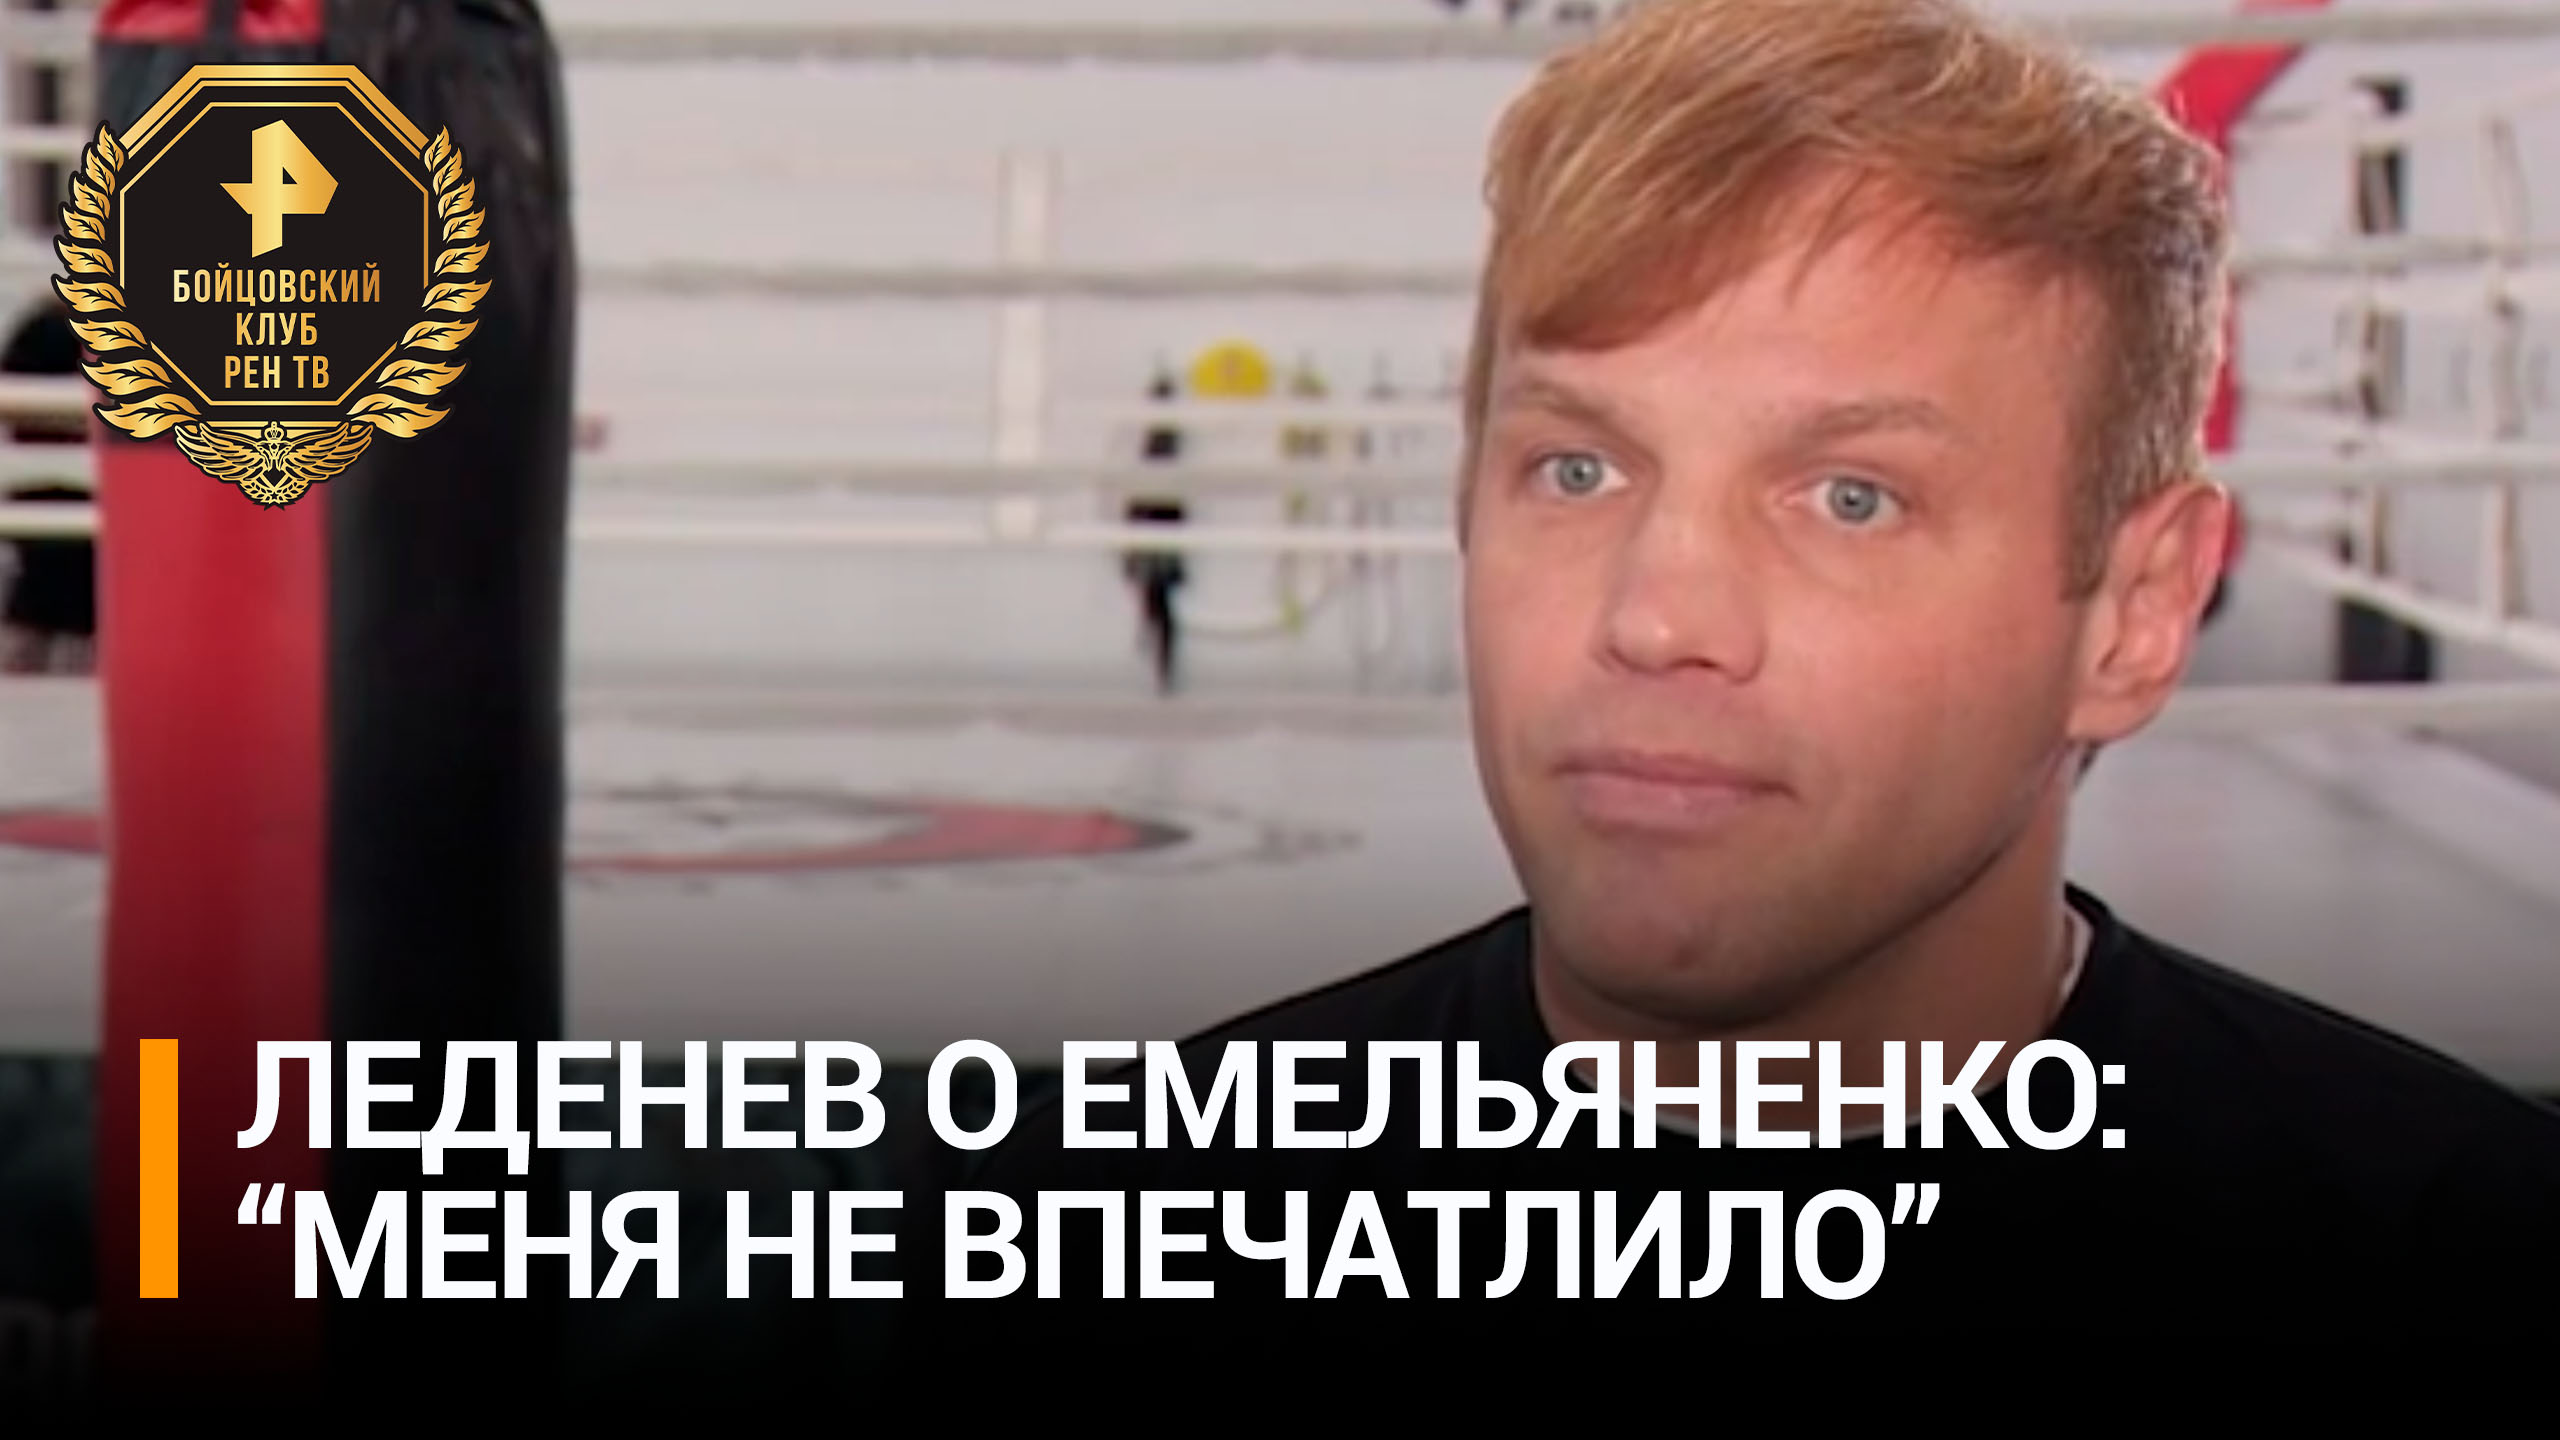 Леденев назвал бой с Иваном Емельяненко "самым ярким вызовом" / Бойцовский клуб РЕН